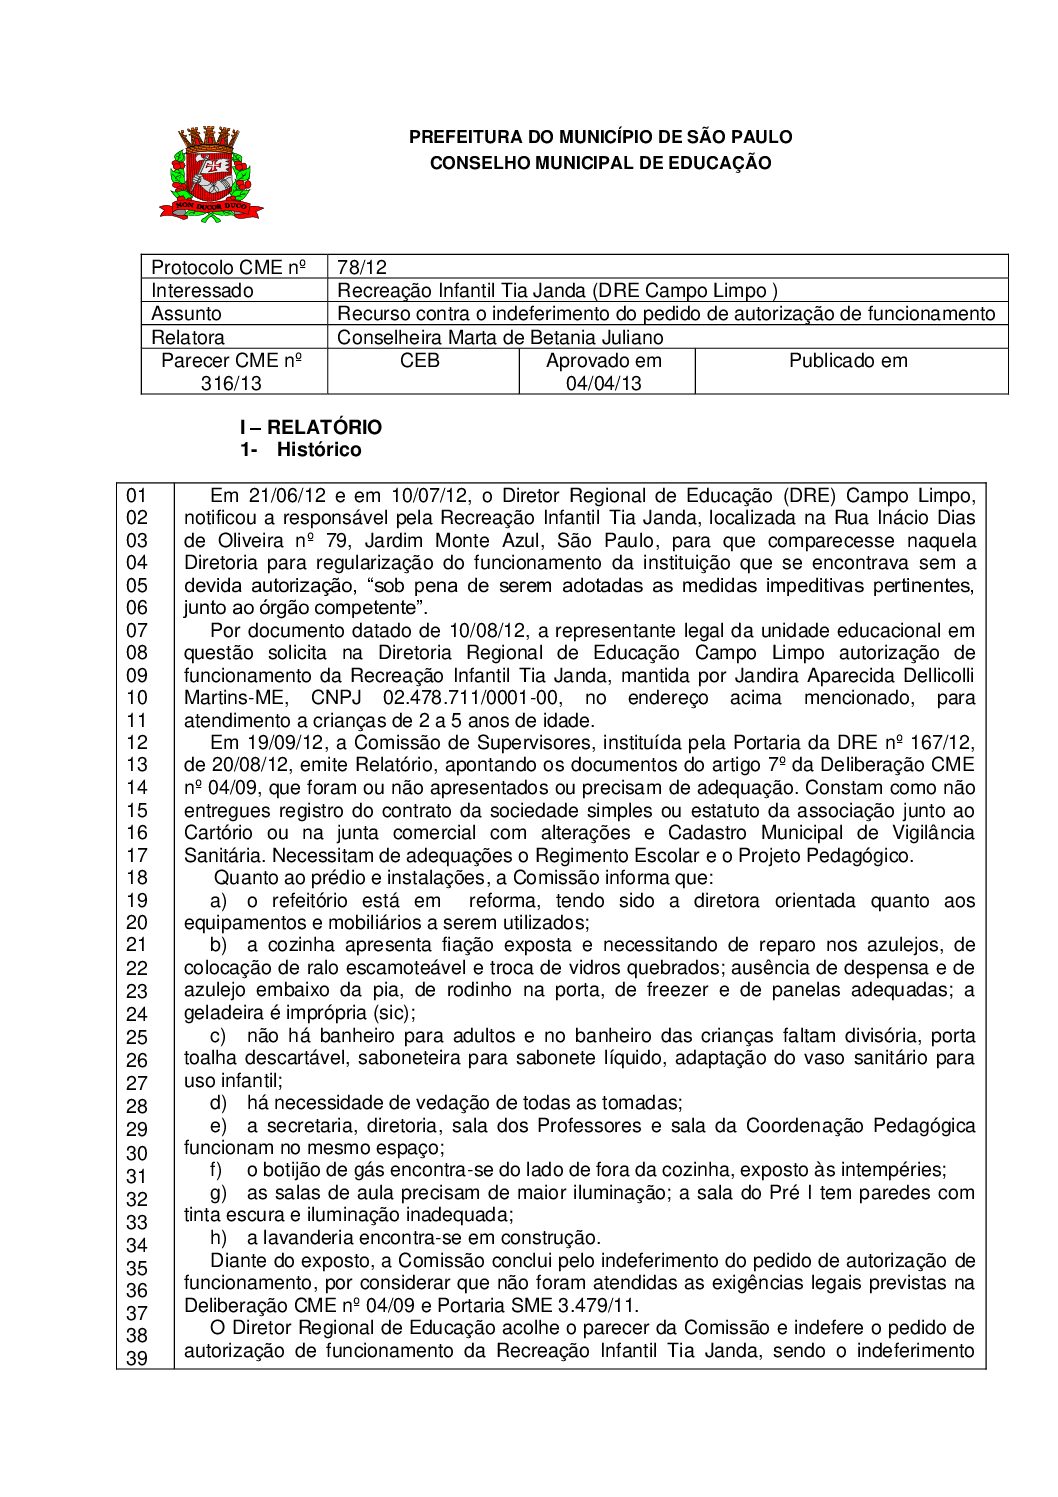 Parecer CME nº 316/2013 - Recreação Infantil Tia Janda (DRE Campo Limpo ) - Recurso contra o indeferimento do pedido de autorização de funcionamento 